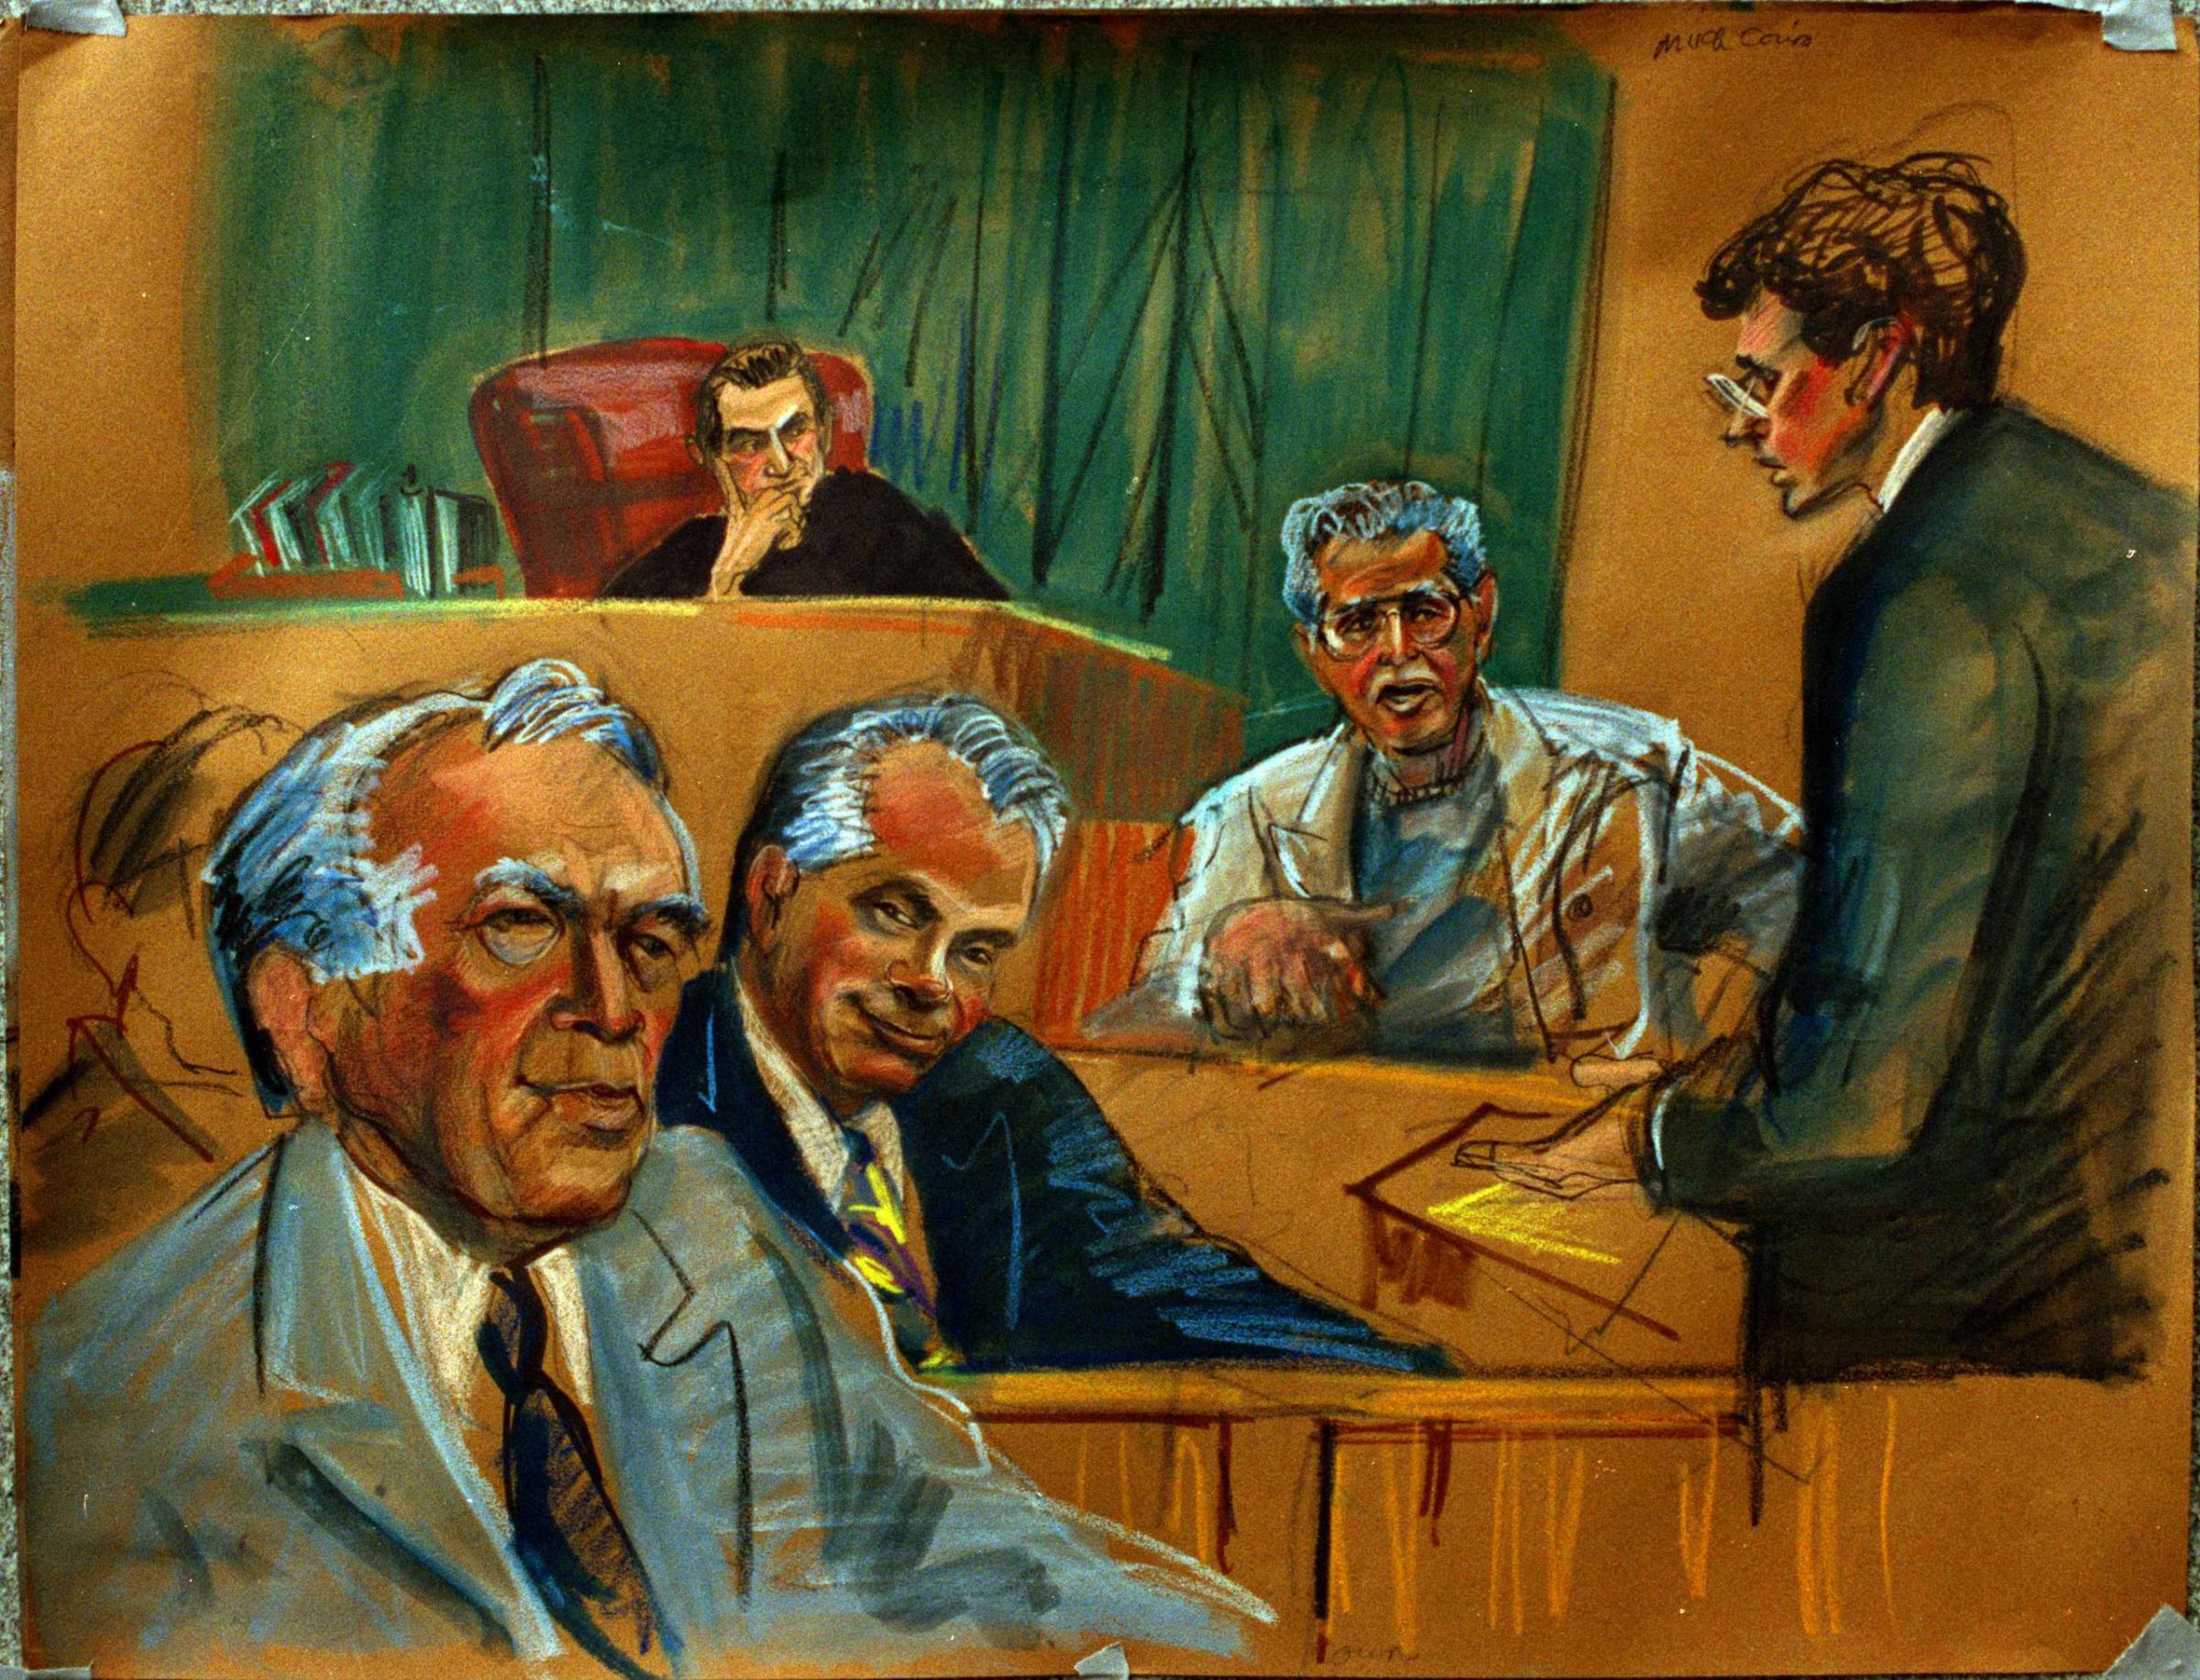 John Gotti Trial